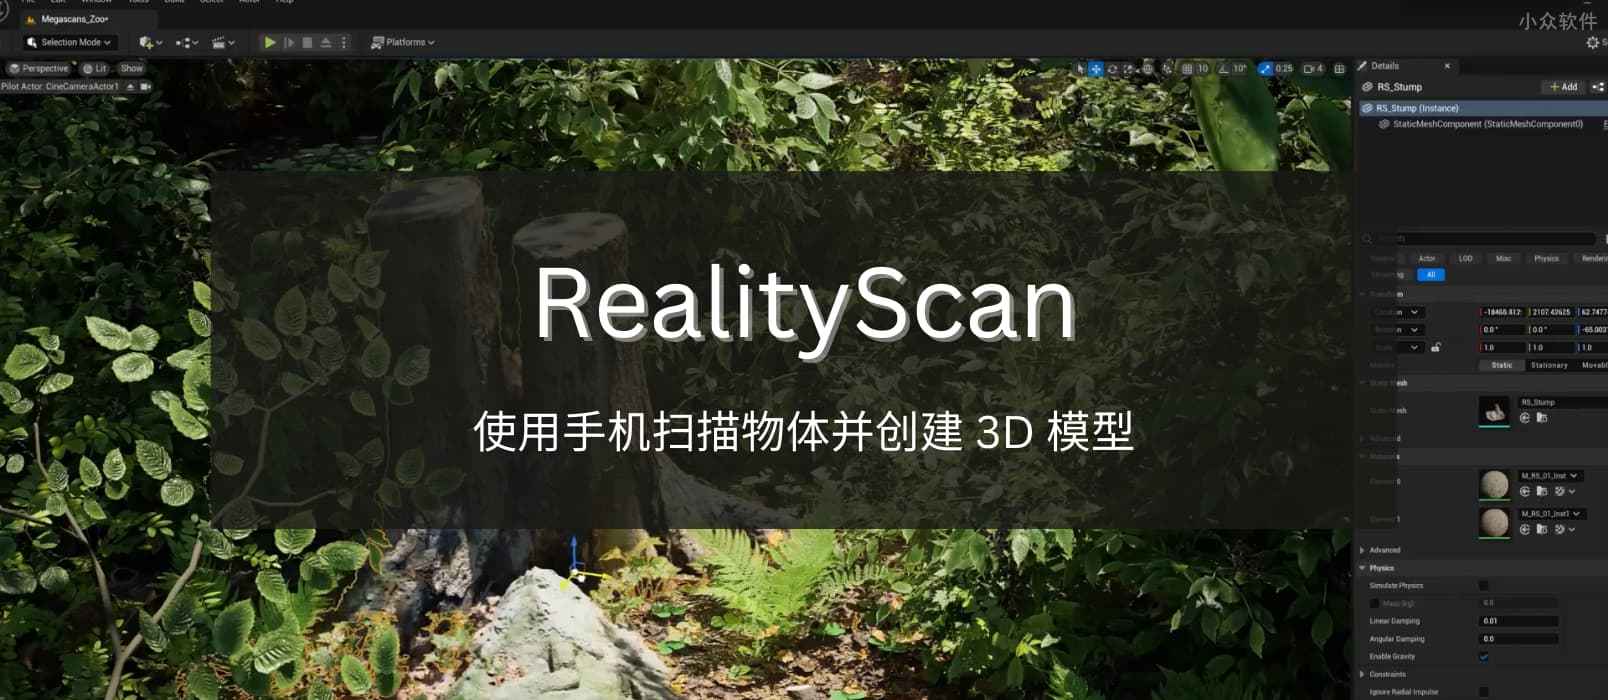 RealityScan - 来自 Epic，使用手机扫描物体并创建 3D 模型[iPhone/iPad]